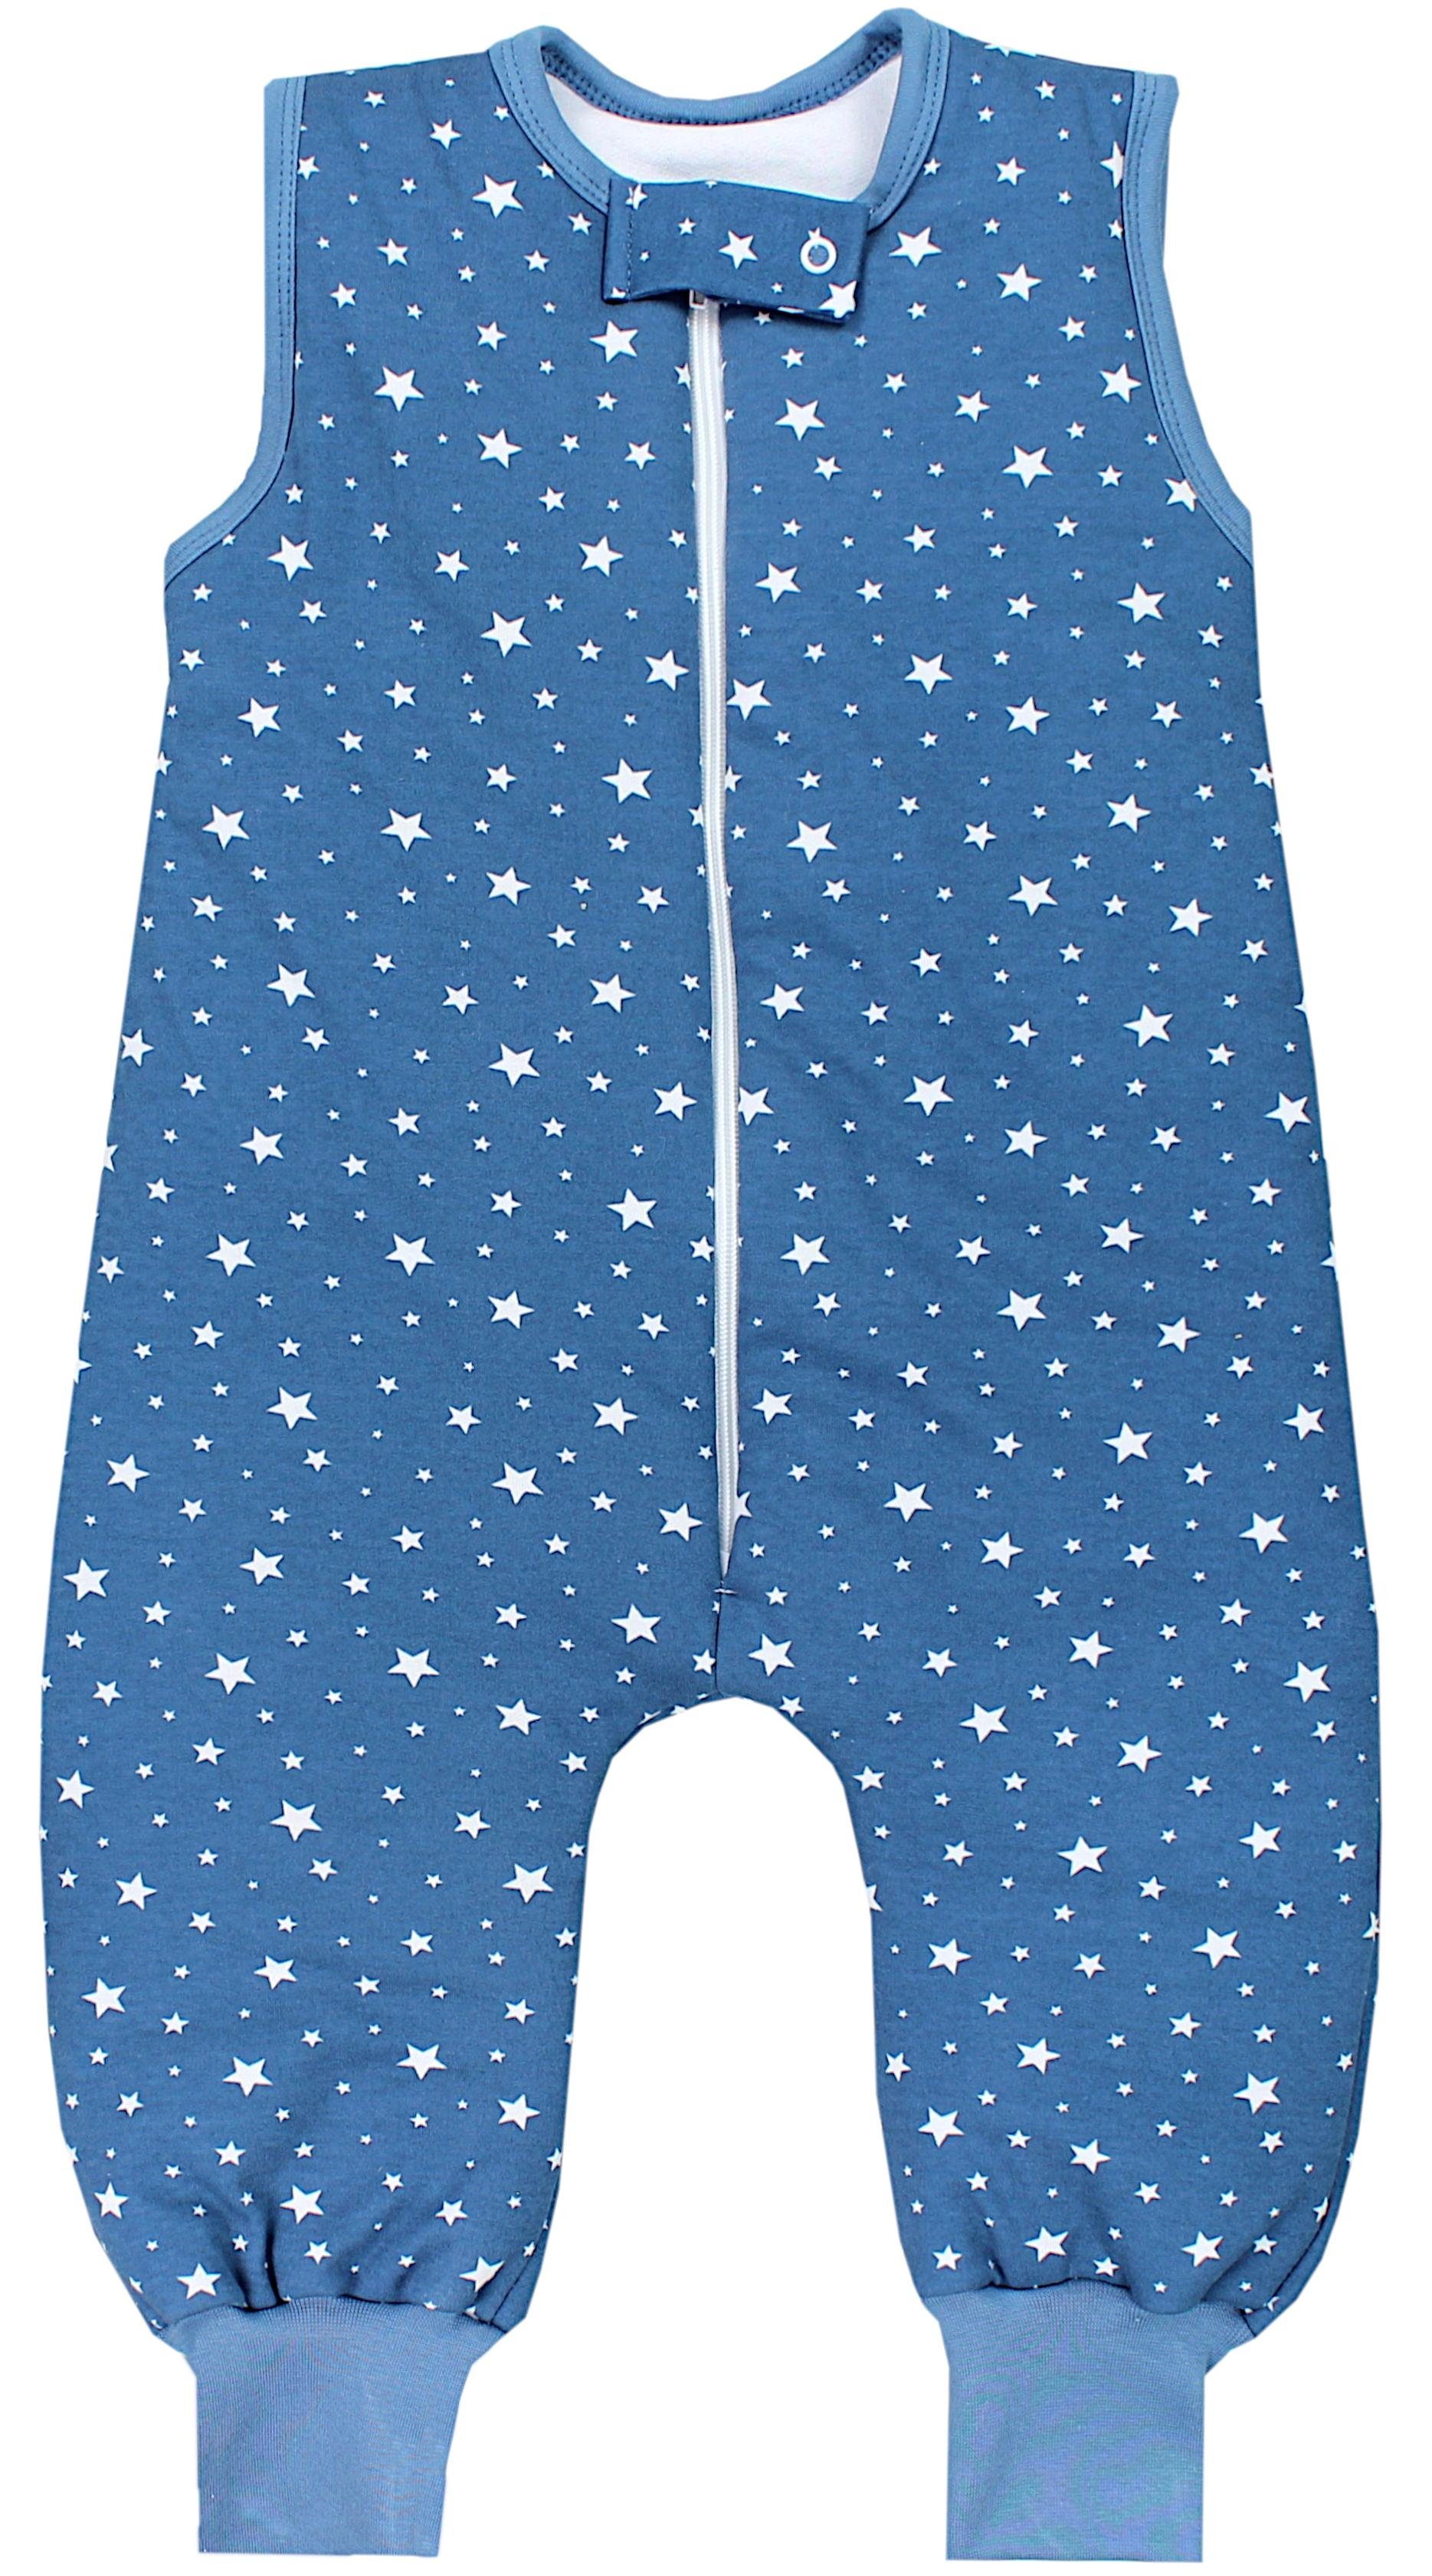 TupTam Babyschlafsack Winter Schlafsack mit Beinen OEKO-TEX zertifiziert 2,5 TOG Unisex Weiße Sterne Jeansblau